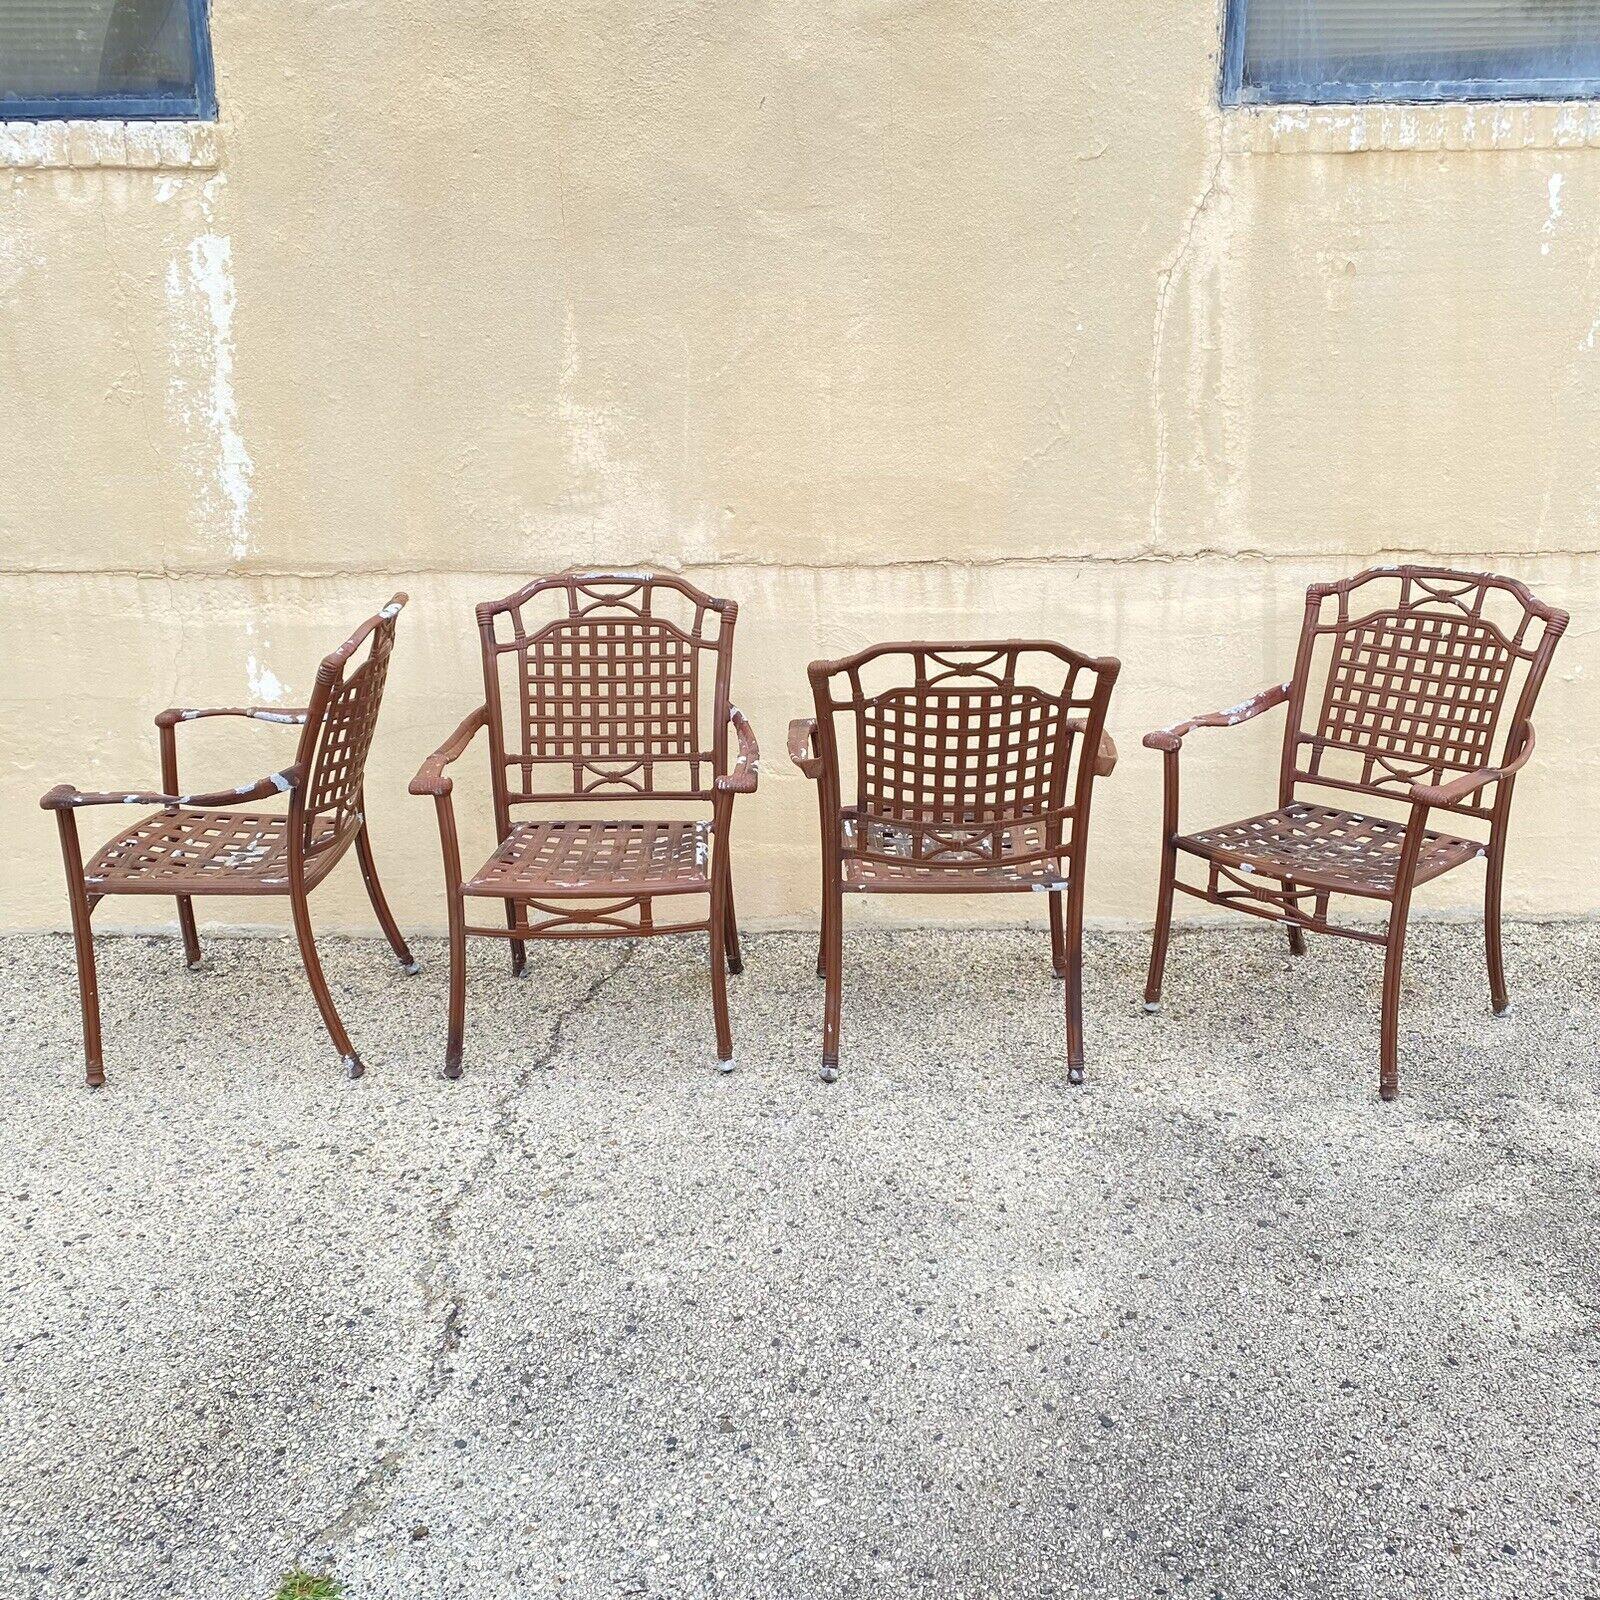 Gegossenes Aluminium Korbgeflecht Rattan Patio Outdoor Arm Chairs - Set von 4. Artikel verfügt über stapelbare Rahmen, gegossenes Aluminium Konstruktion, großen Stil und Form. CIRCA Spätes 20. - 21. Jahrhundert. Abmessungen: 36,5